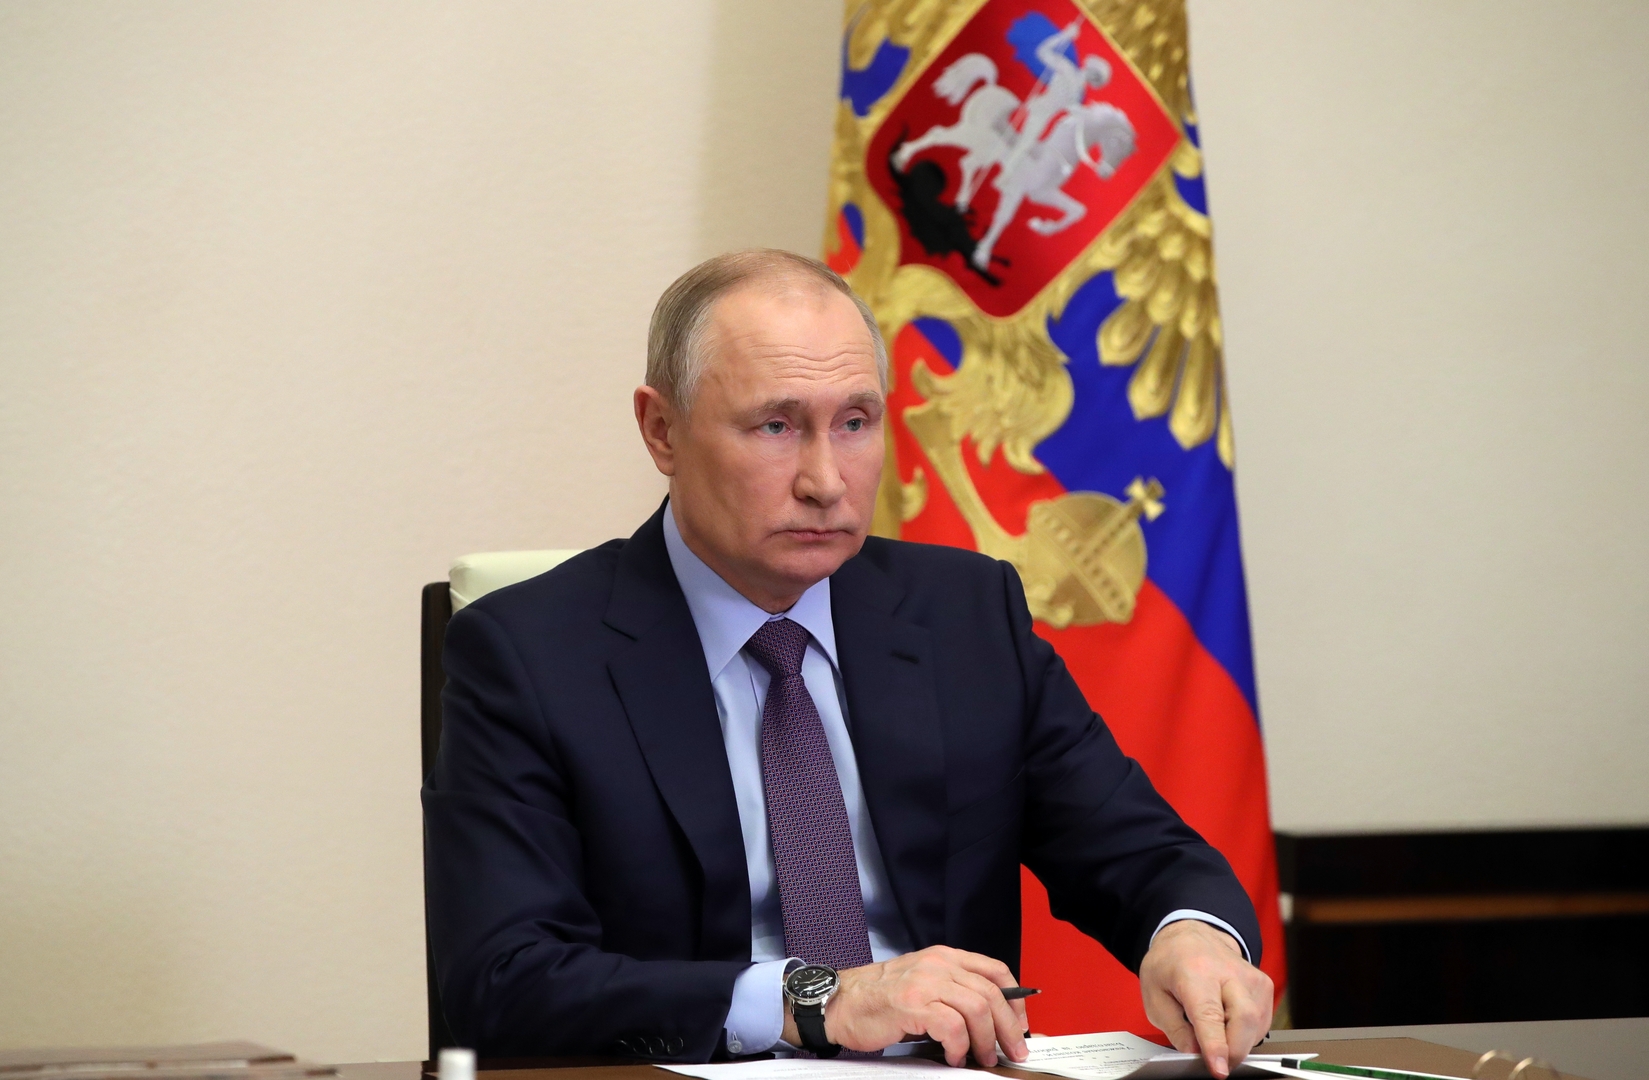 بوتين: الاقتصاد الروسي قادر على العمل بثبات ودون اضطرابات